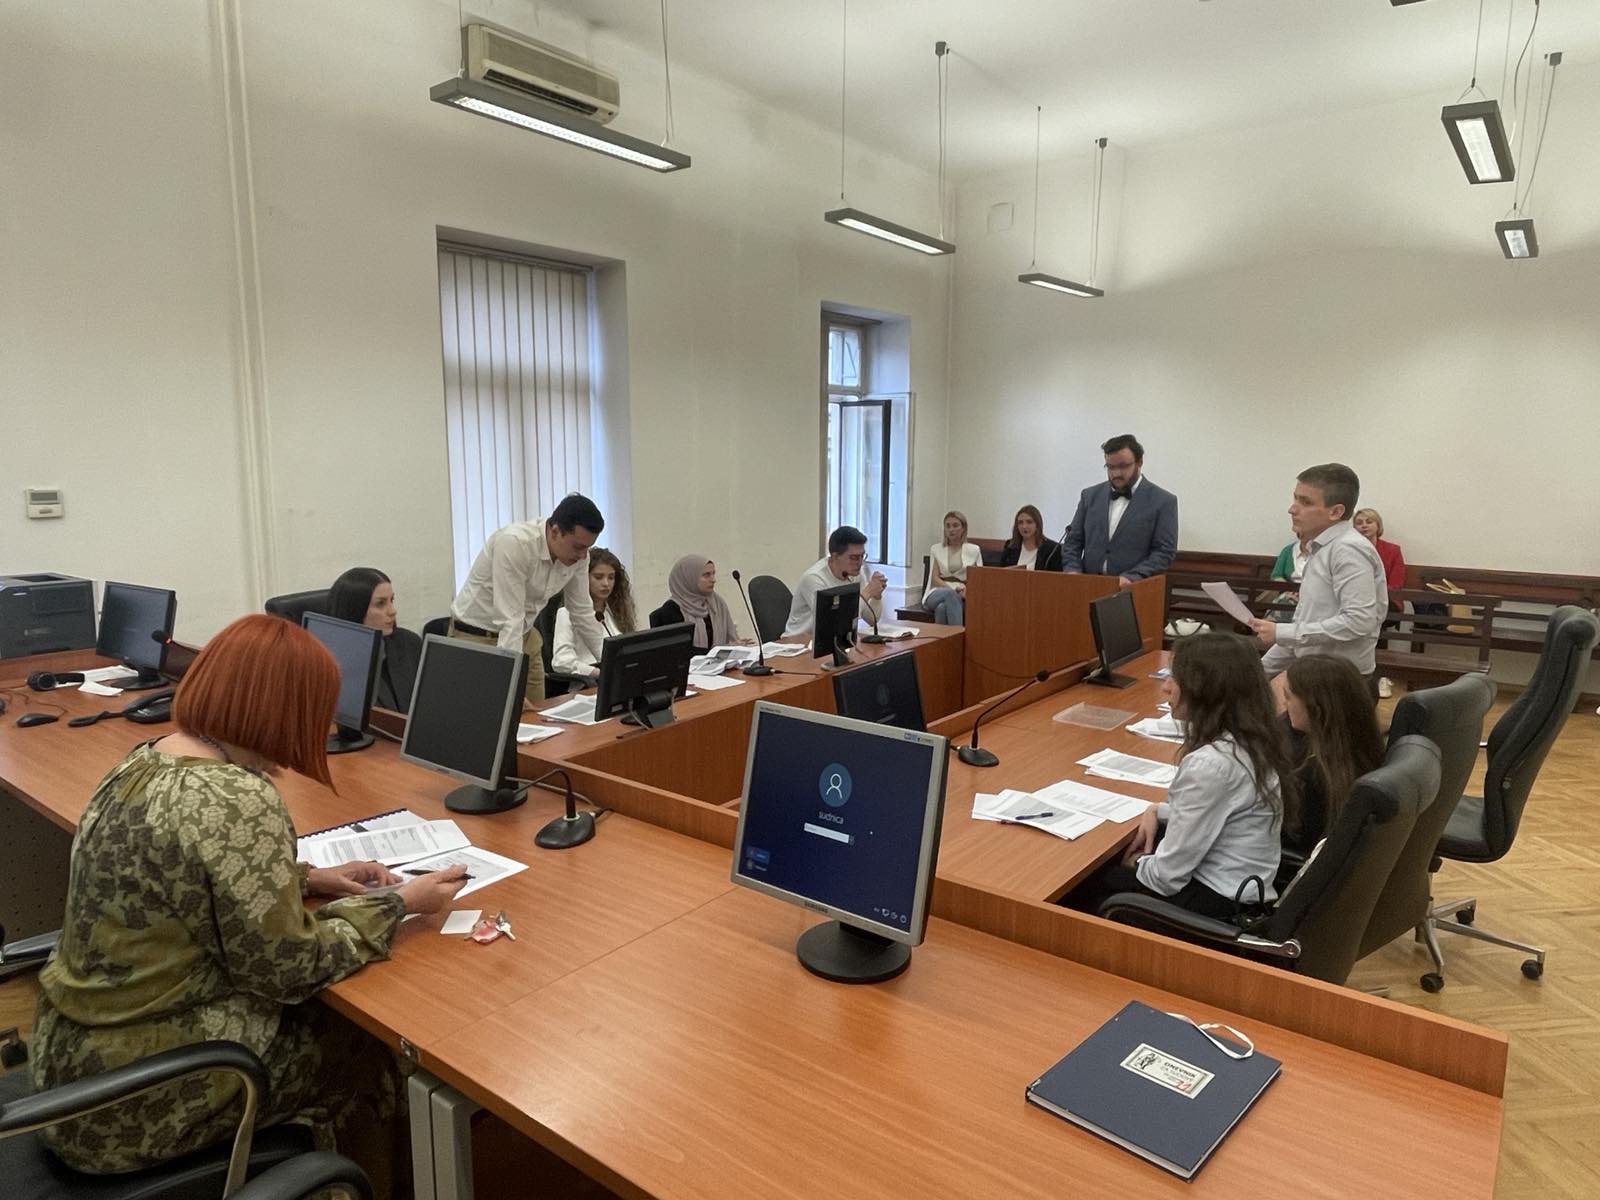 Održana završna simulacija studenata Pravnog fakulteta Univerziteta u Sarajevu